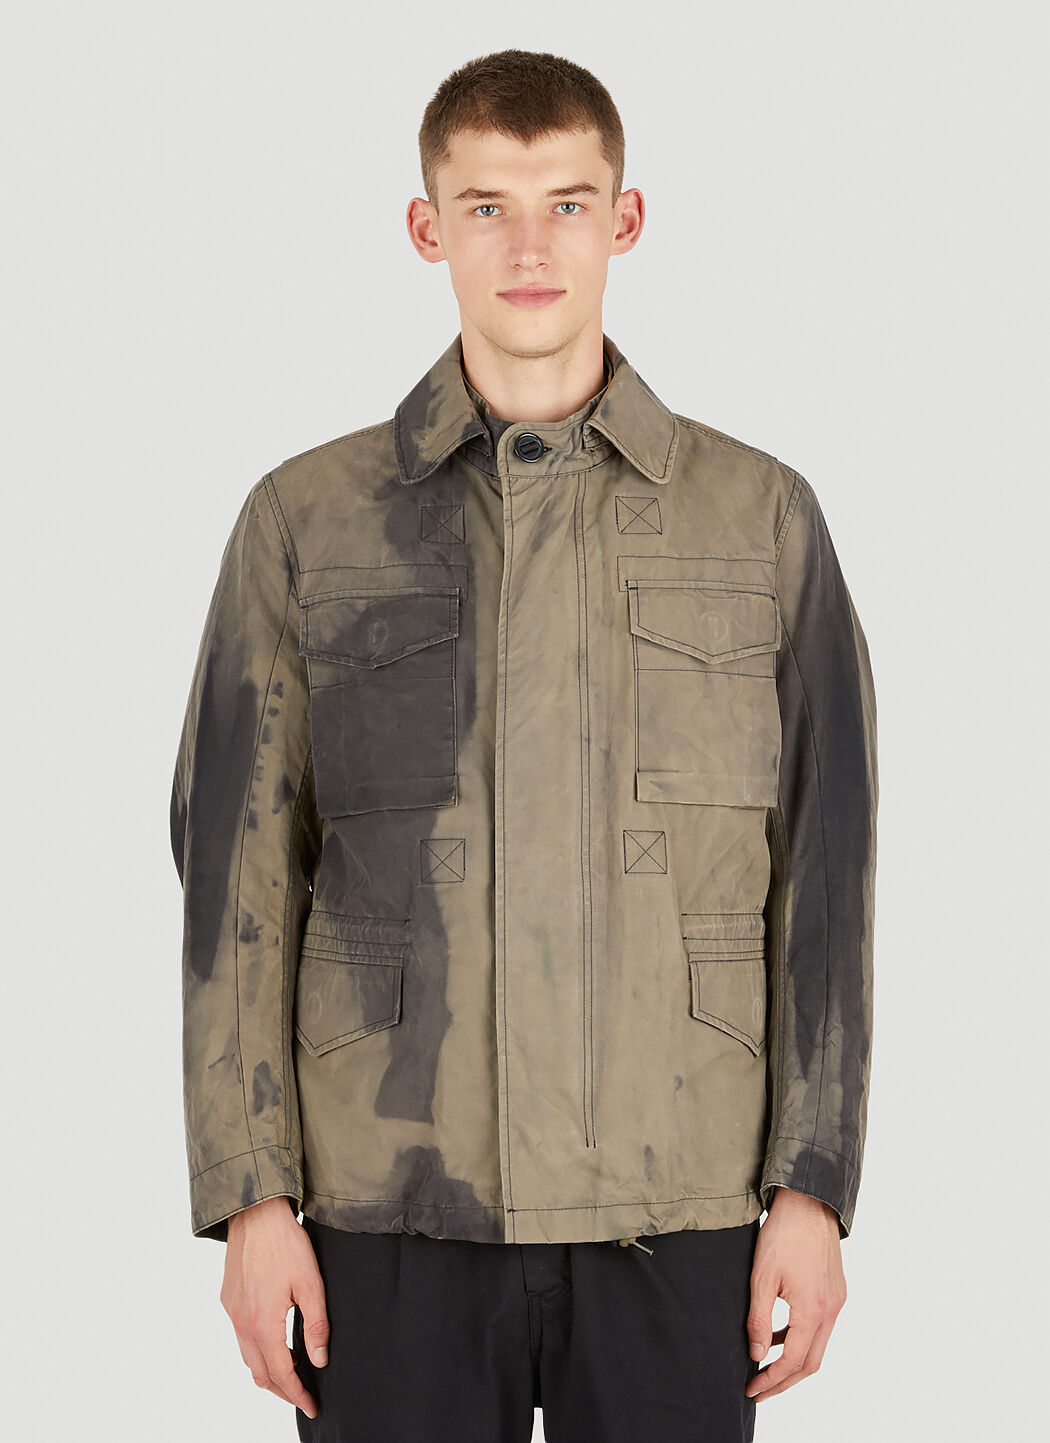 Applied Art Forms Field Jacket in Grey | LN-CC®